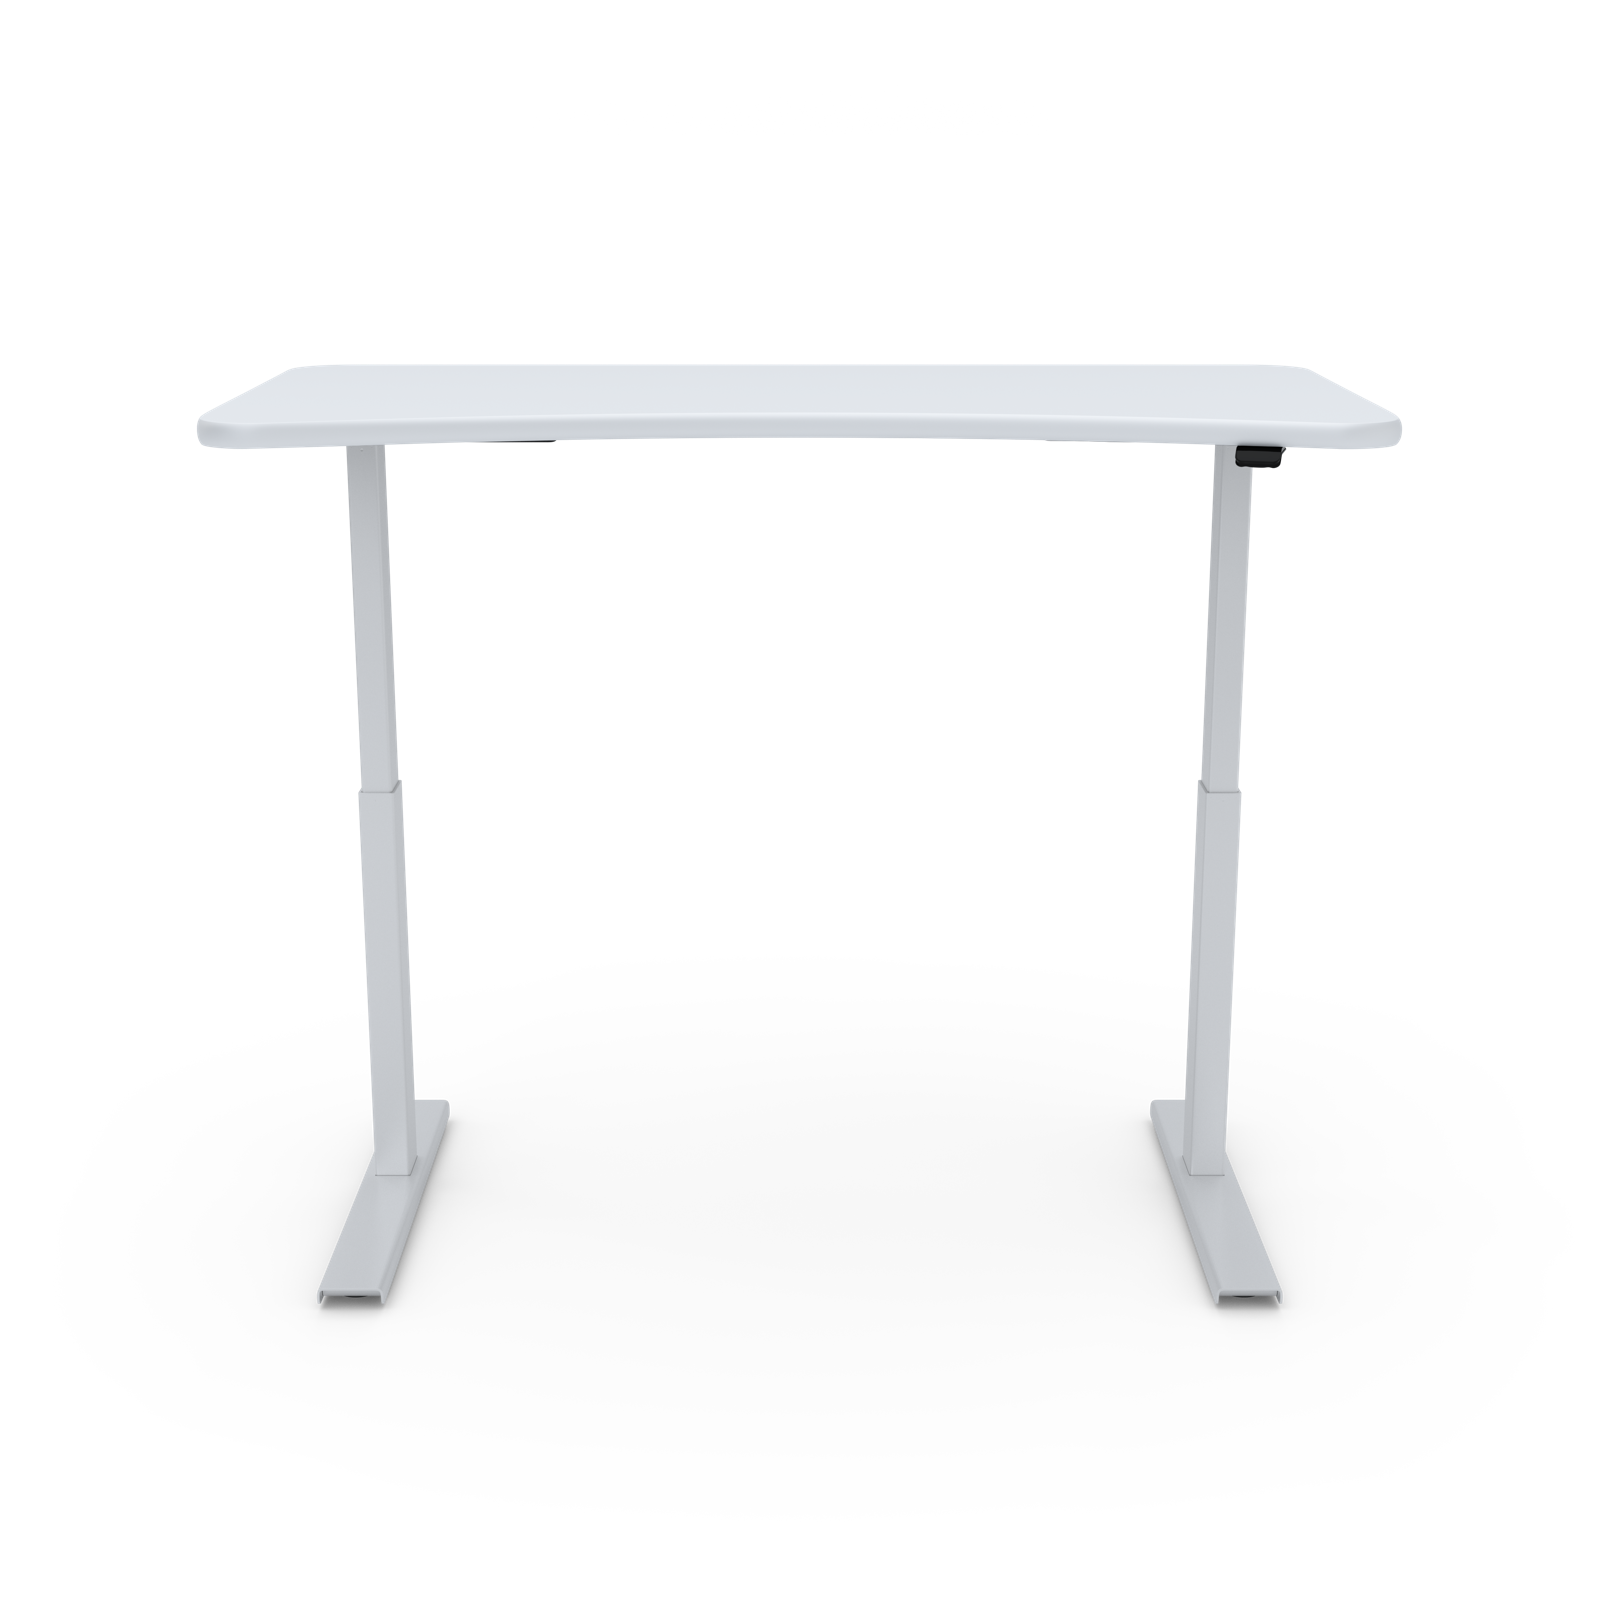 Updesk Elements Standard Adjustable Standing Desk - Black And White Desk, Transparent background PNG HD thumbnail